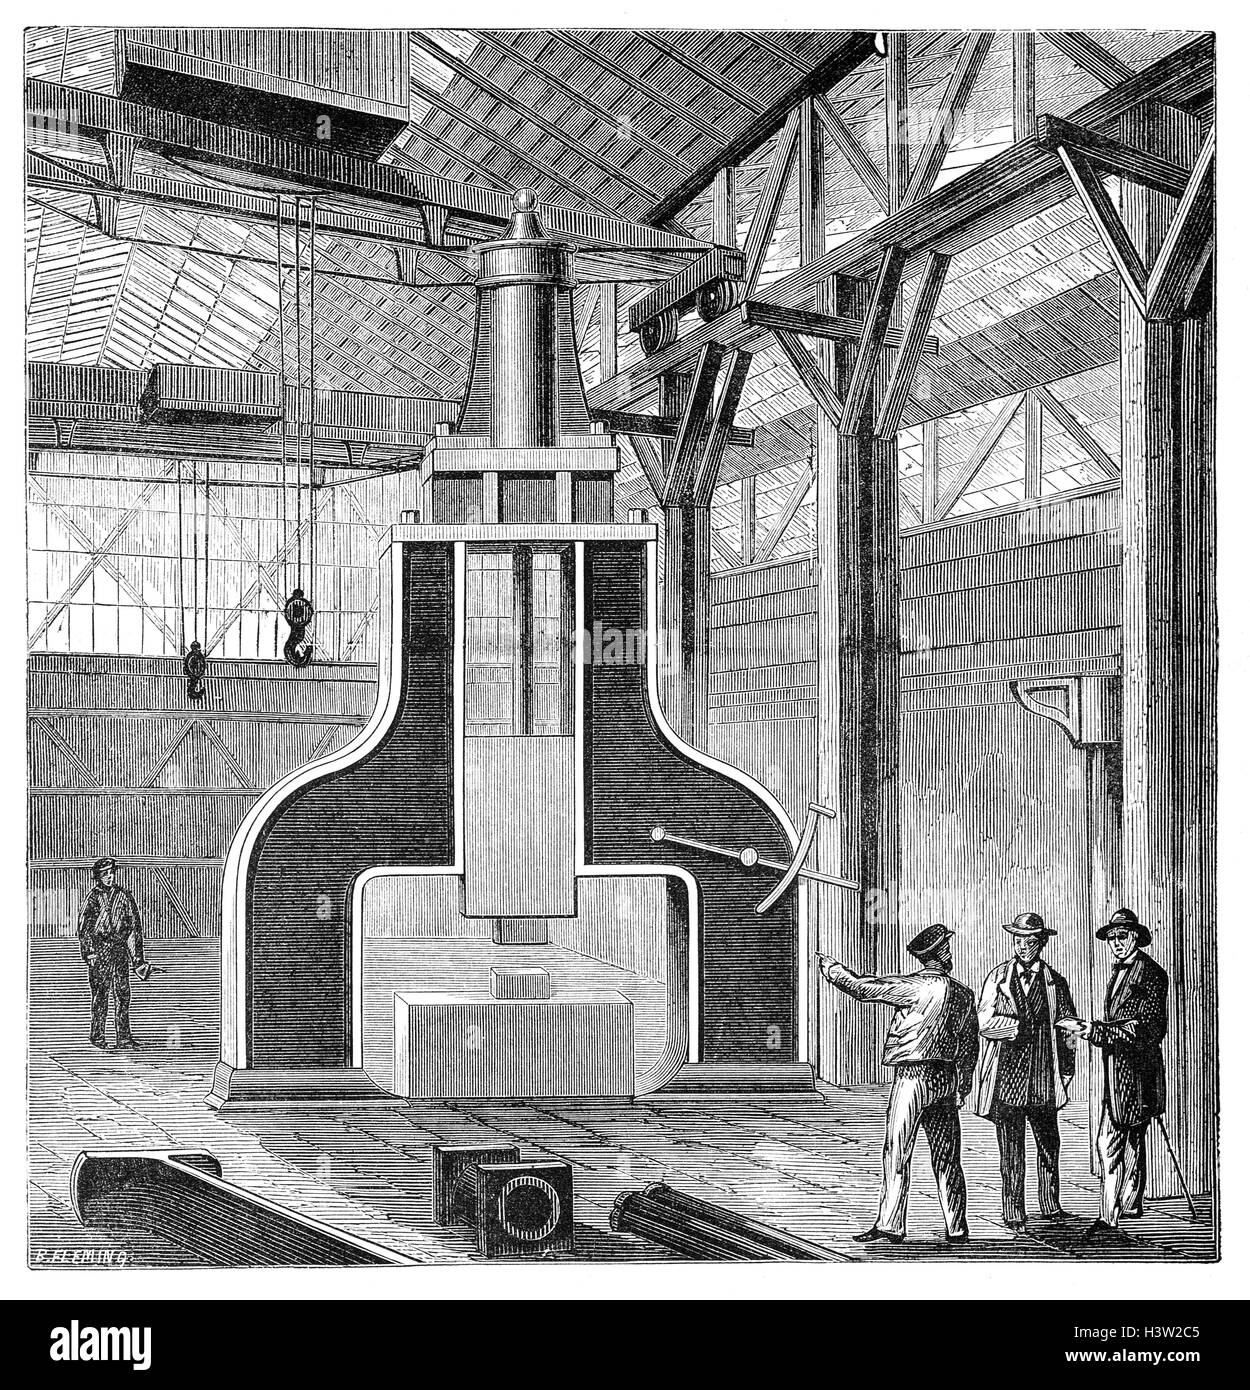 James Nasmyth Hall (1808 - 1890) fue un ingeniero escocés, artista e inventor famoso por su desarrollo del martillo de vapor. Foto de stock